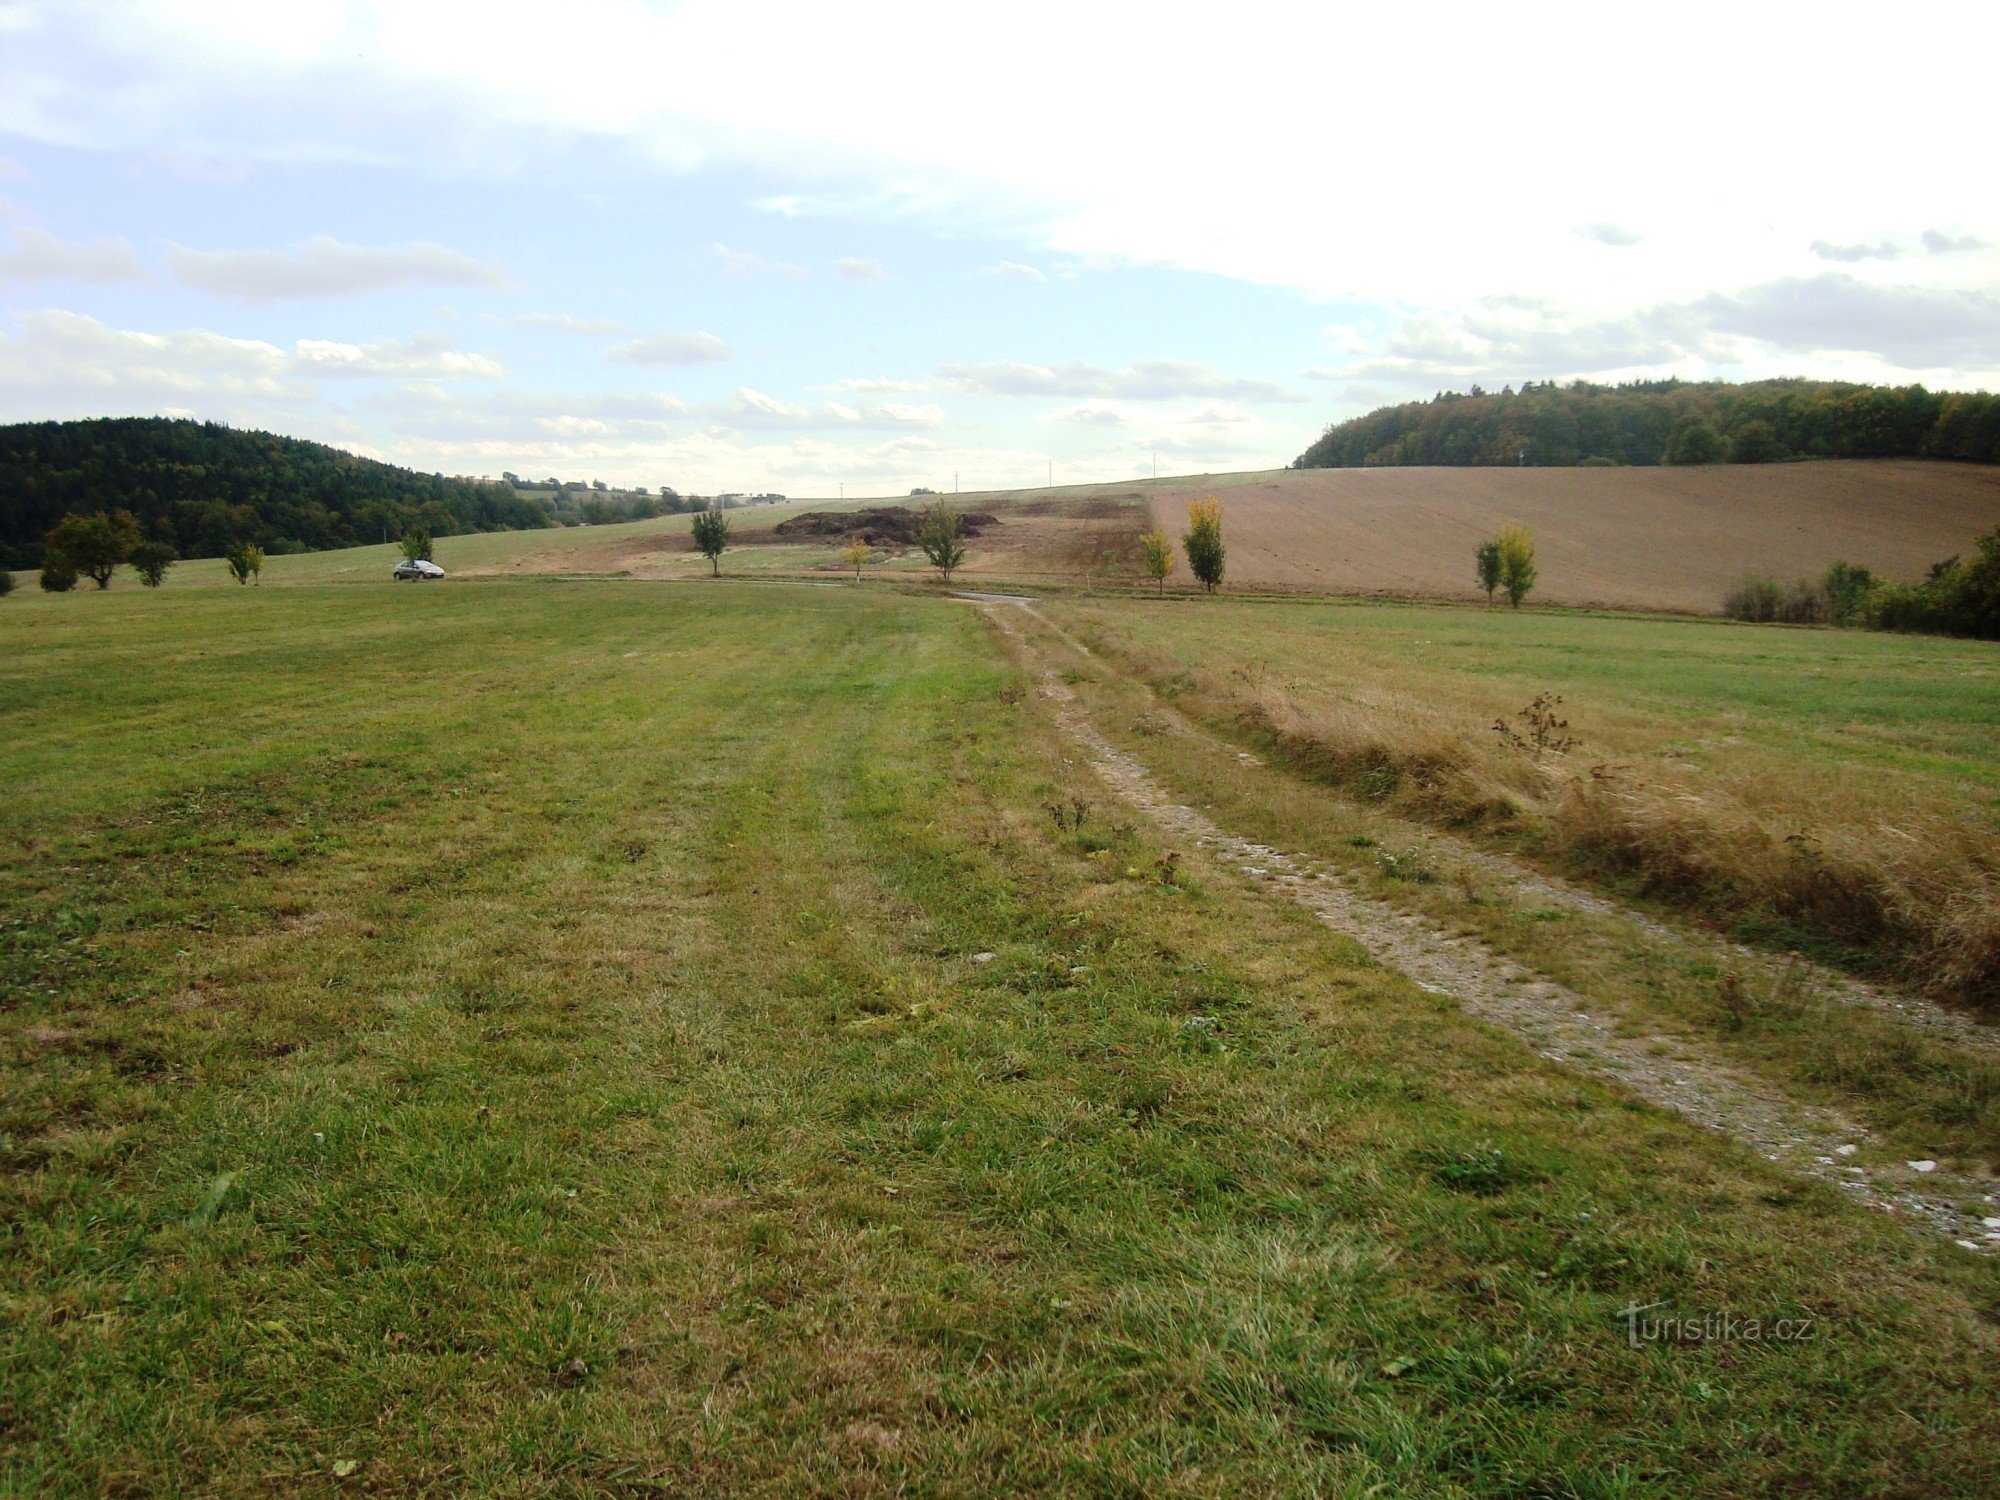 Rezerwat przyrody Prűchodnice-krajobraz w pobliżu drogi dojazdowej do rezerwatu z drogi-F